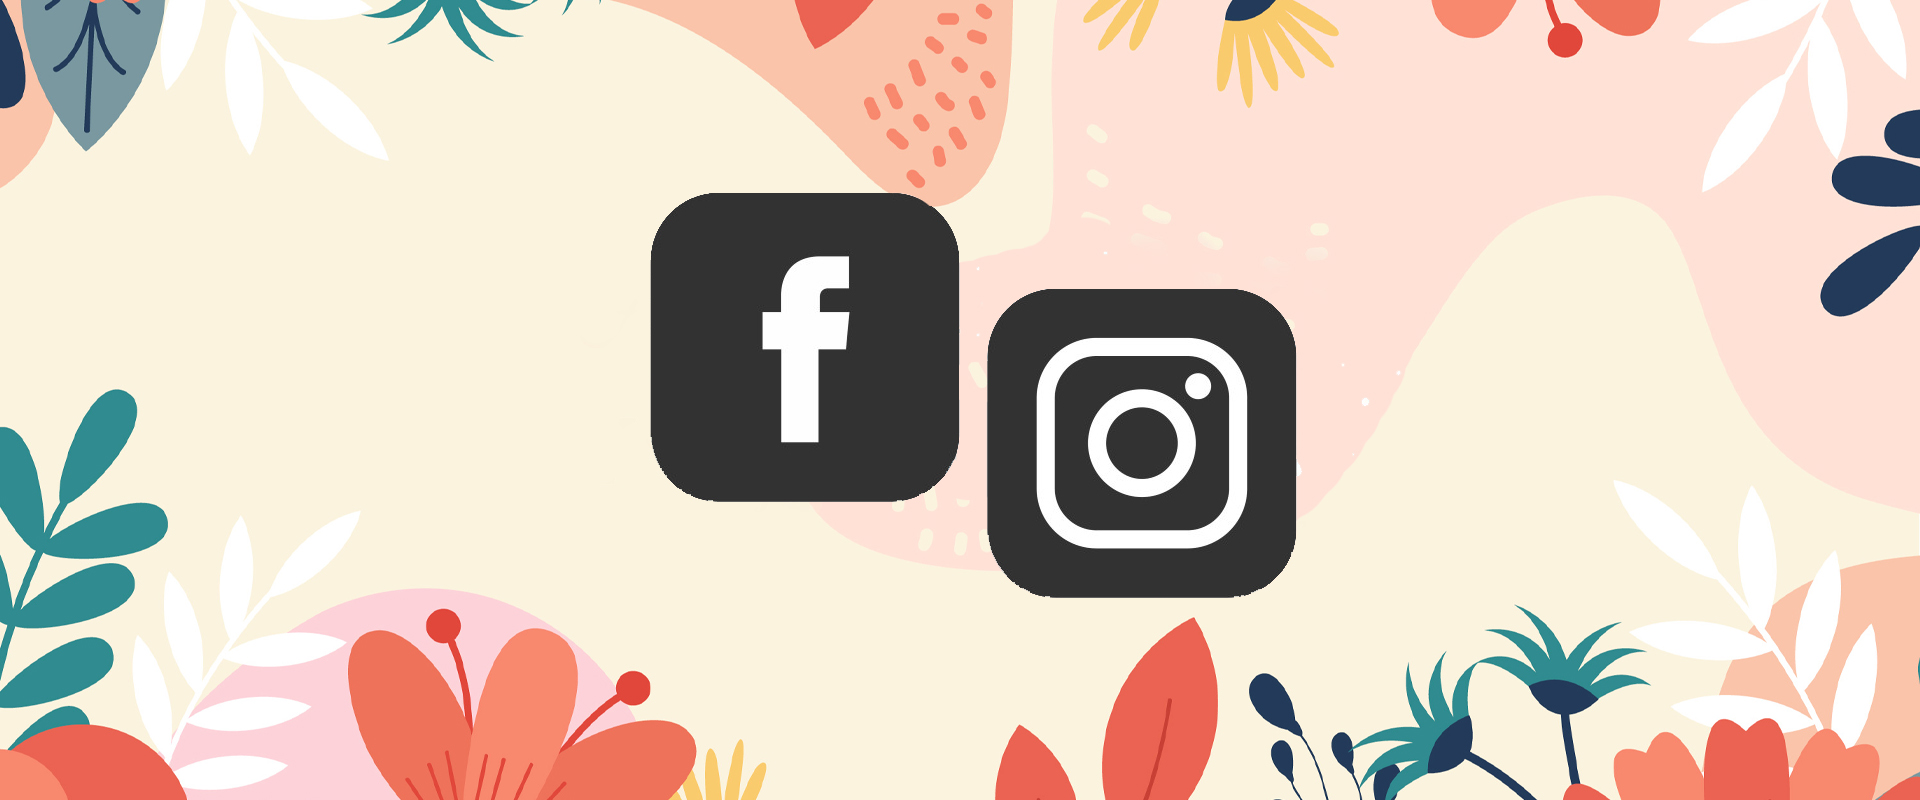 Social Media Facebook Instagram